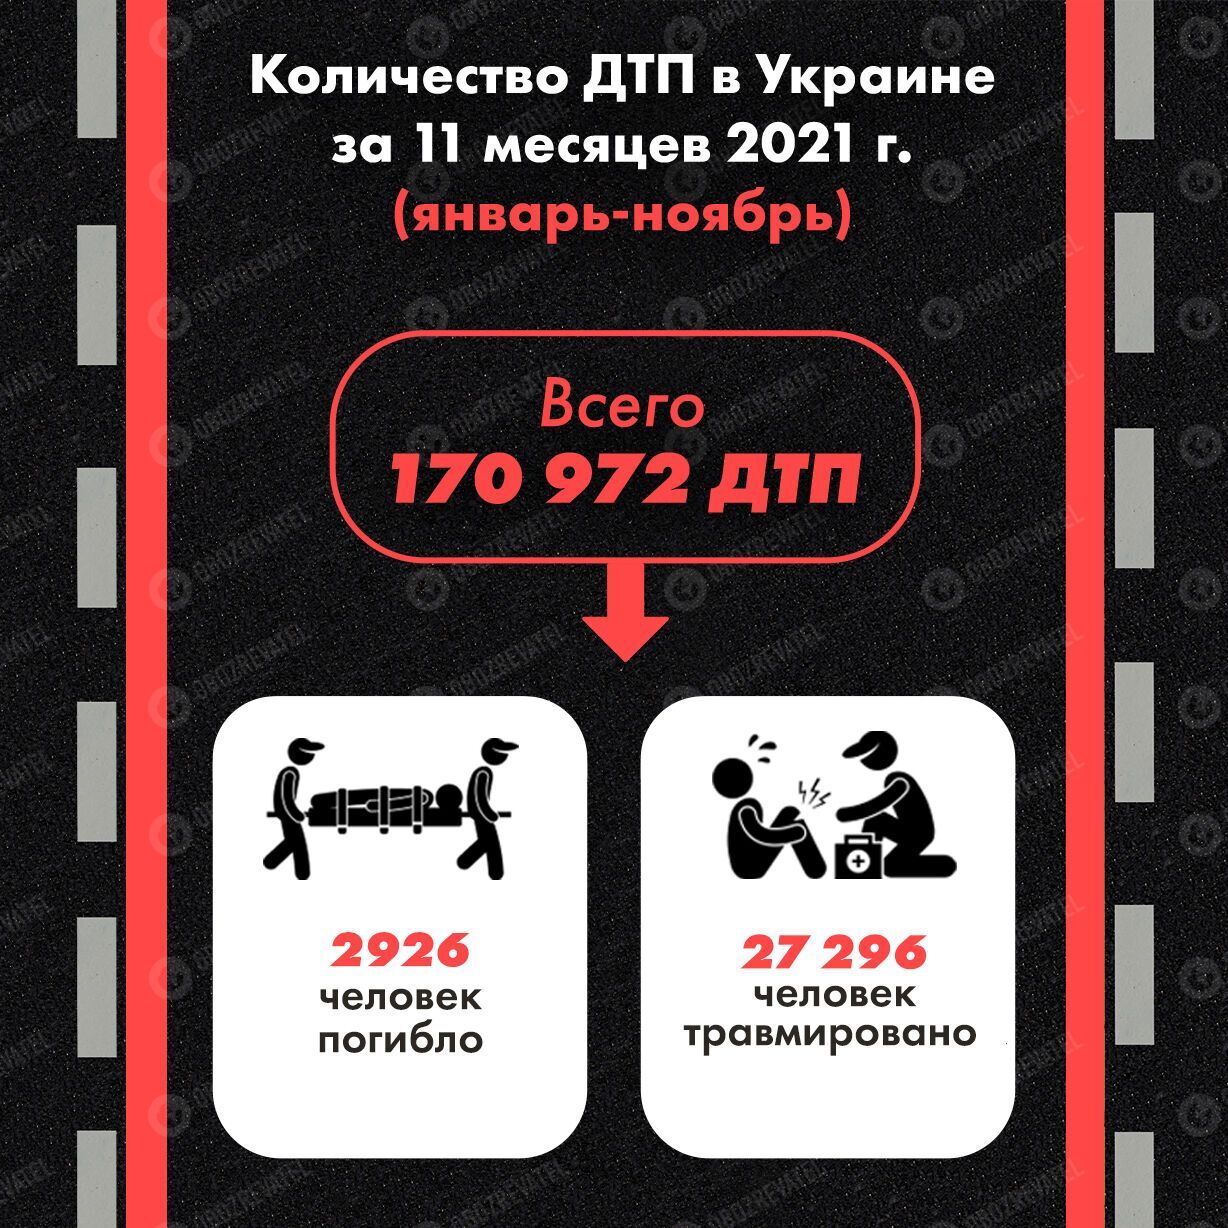 За 11 месяцев 2021 года в Украине случилось 170 972 ДТП